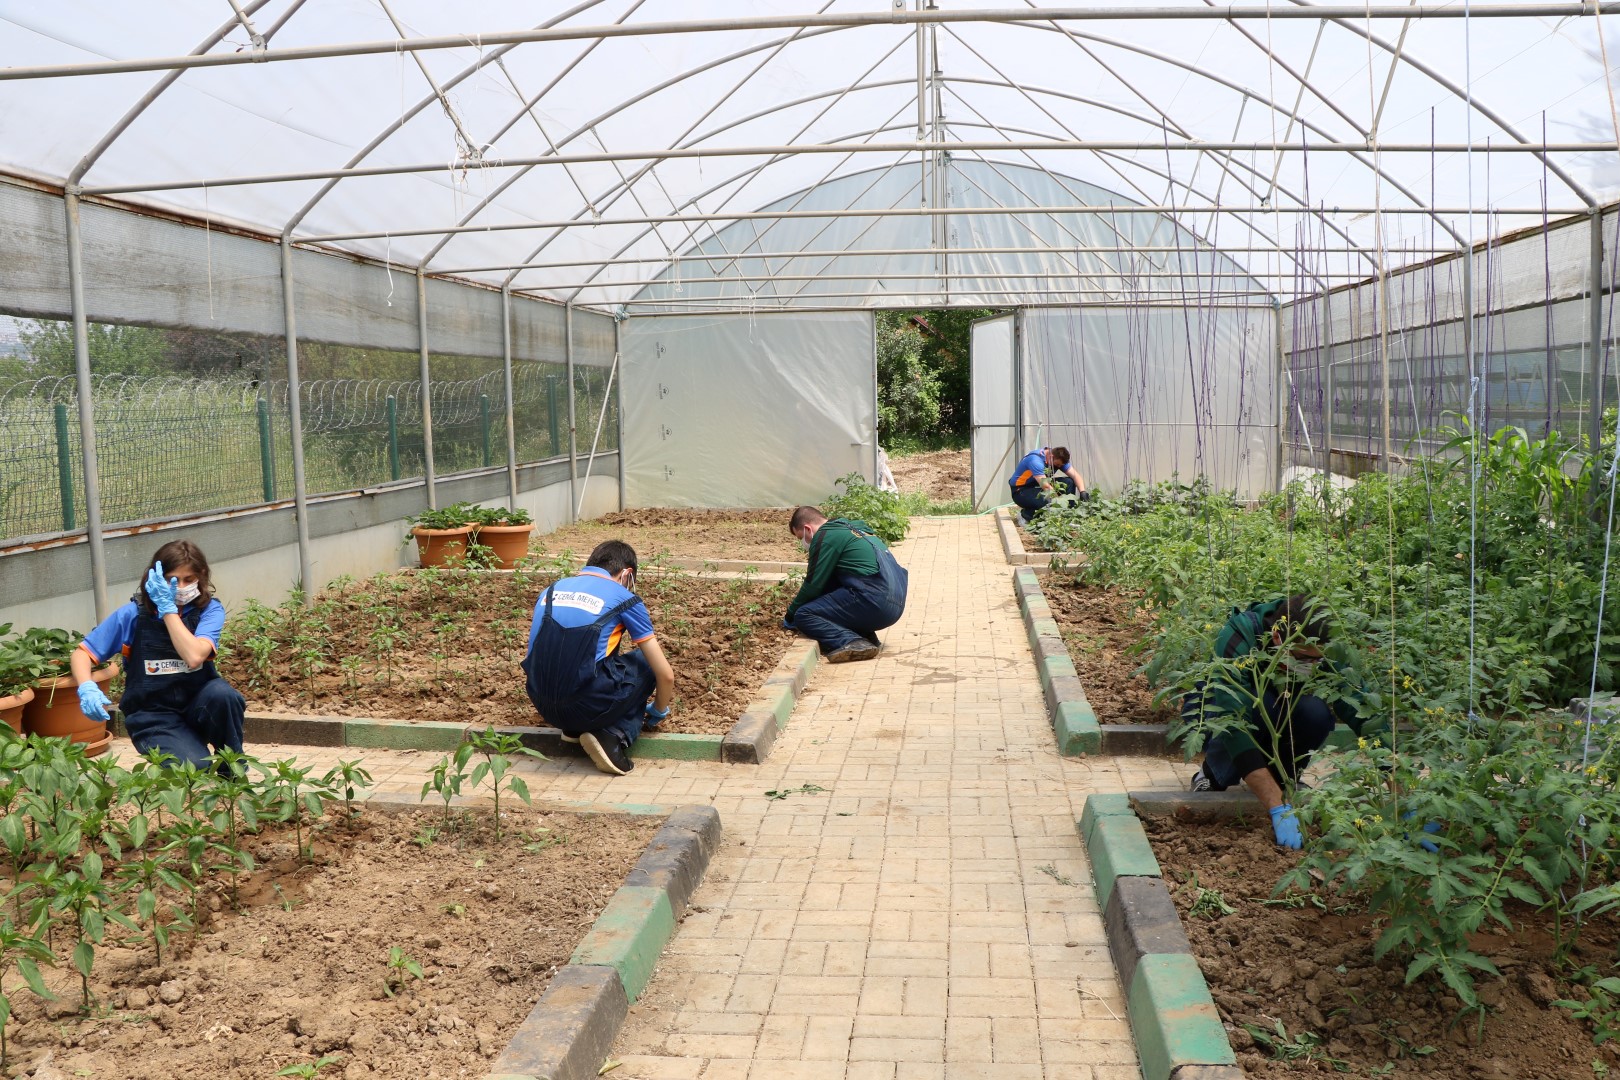  Kocaeli Büyükşehir, Özel Öğrencilere Tarımsal Rehabilitasyon Eğitimi Veriyor